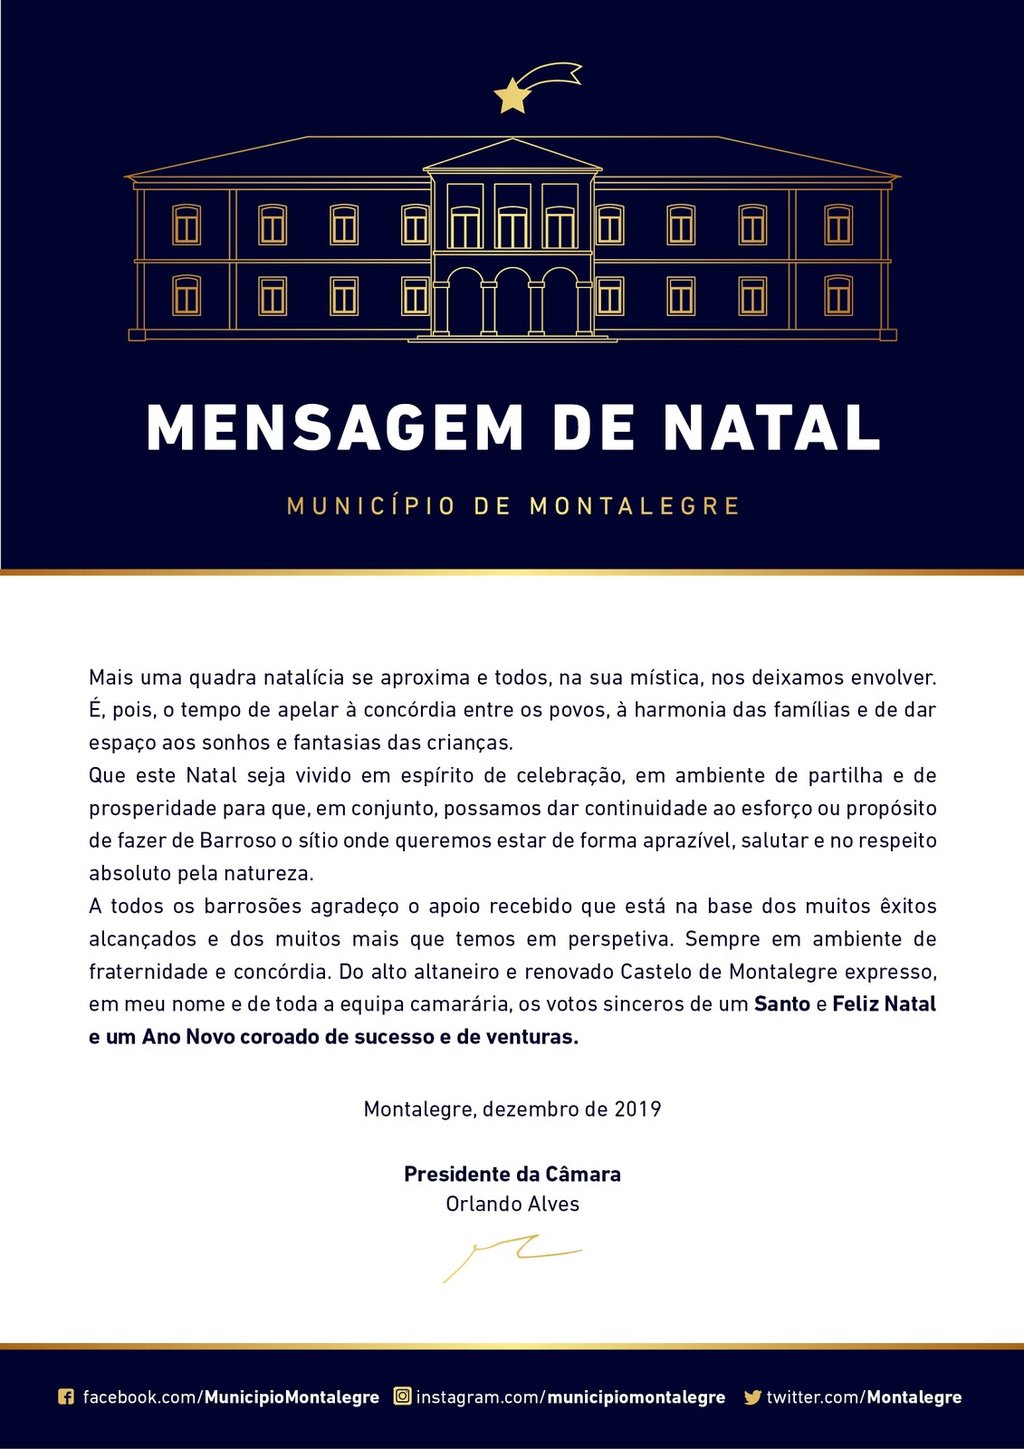 Montalegre   presidente   mensagem de natal 2019   oficial 1 1024 2500